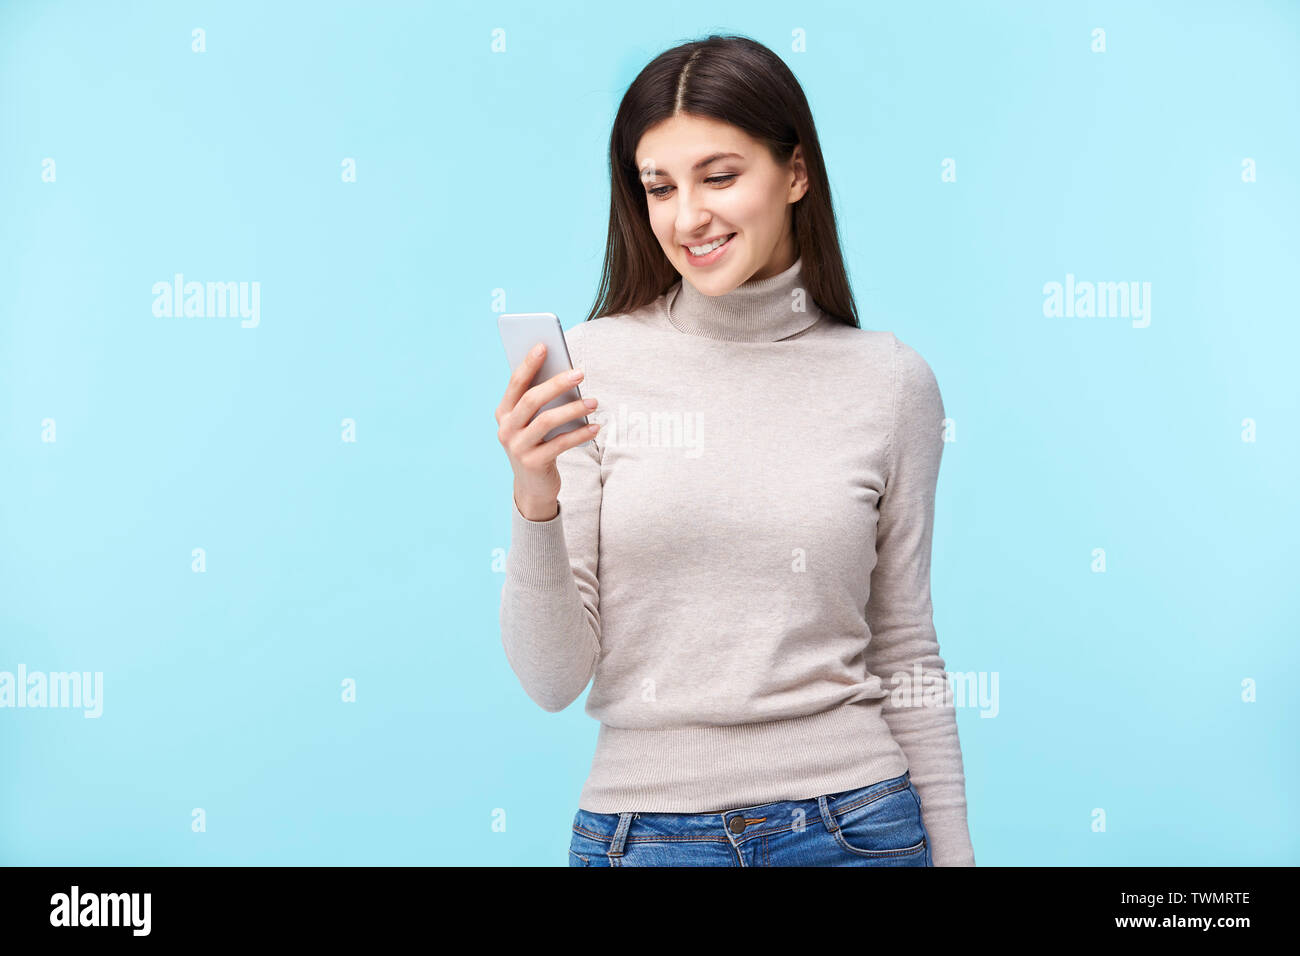 Schönen jungen kaukasischen Frau am Handy suchen, glücklich und lächelnd, auf blauem Hintergrund. Stockfoto